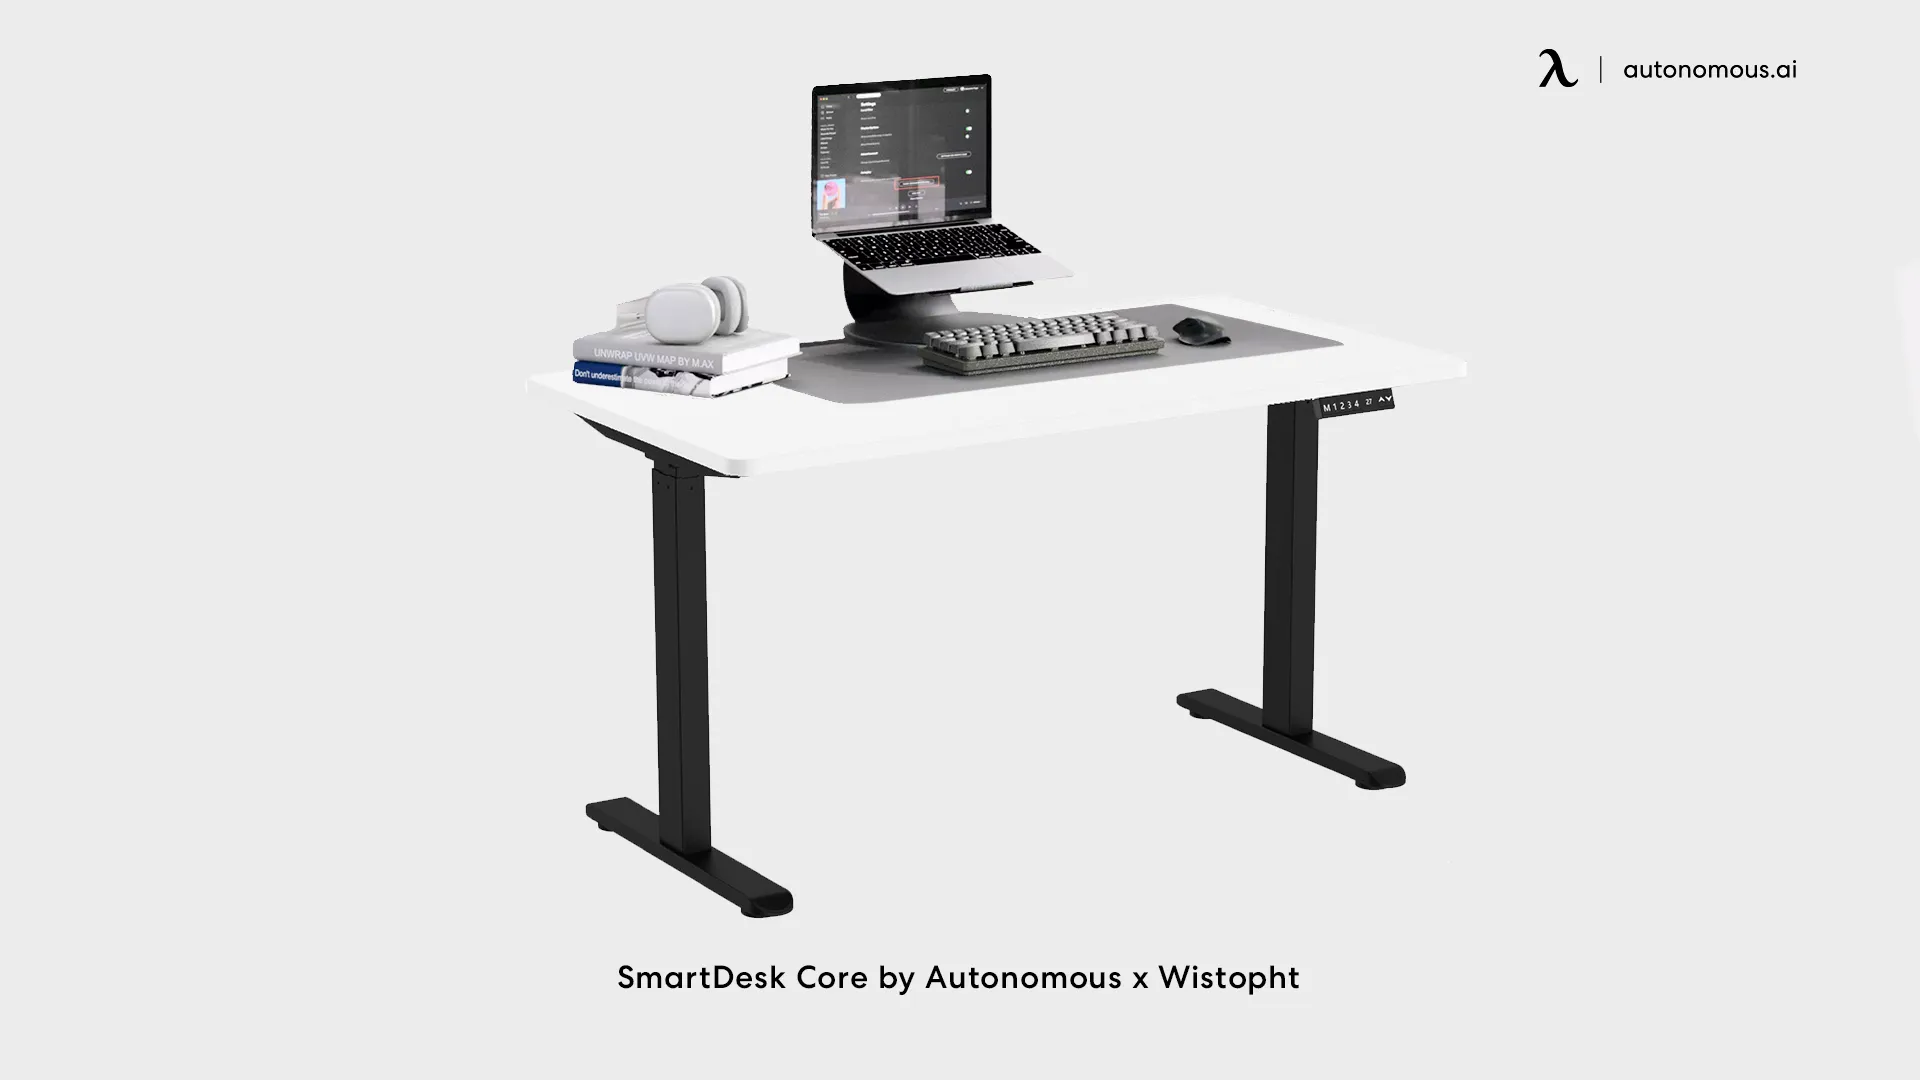 SmartDesk Core by Autonomous x Wistopht